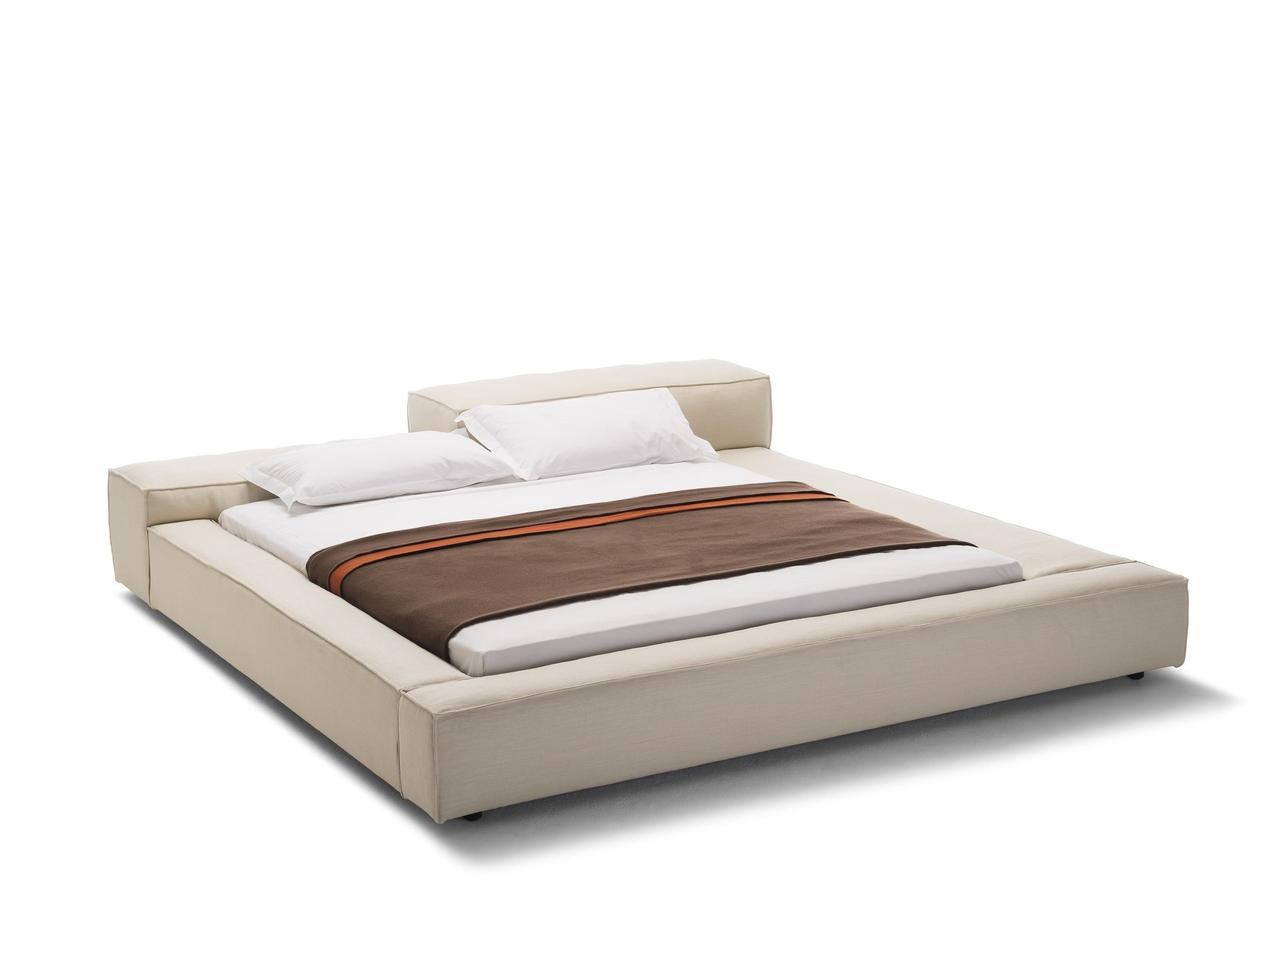 М'яке ліжко-подіум MeBelle MODE-2 160х 190 см бежева, молочна рогожка, модерн, мінімалізм, ар-деко